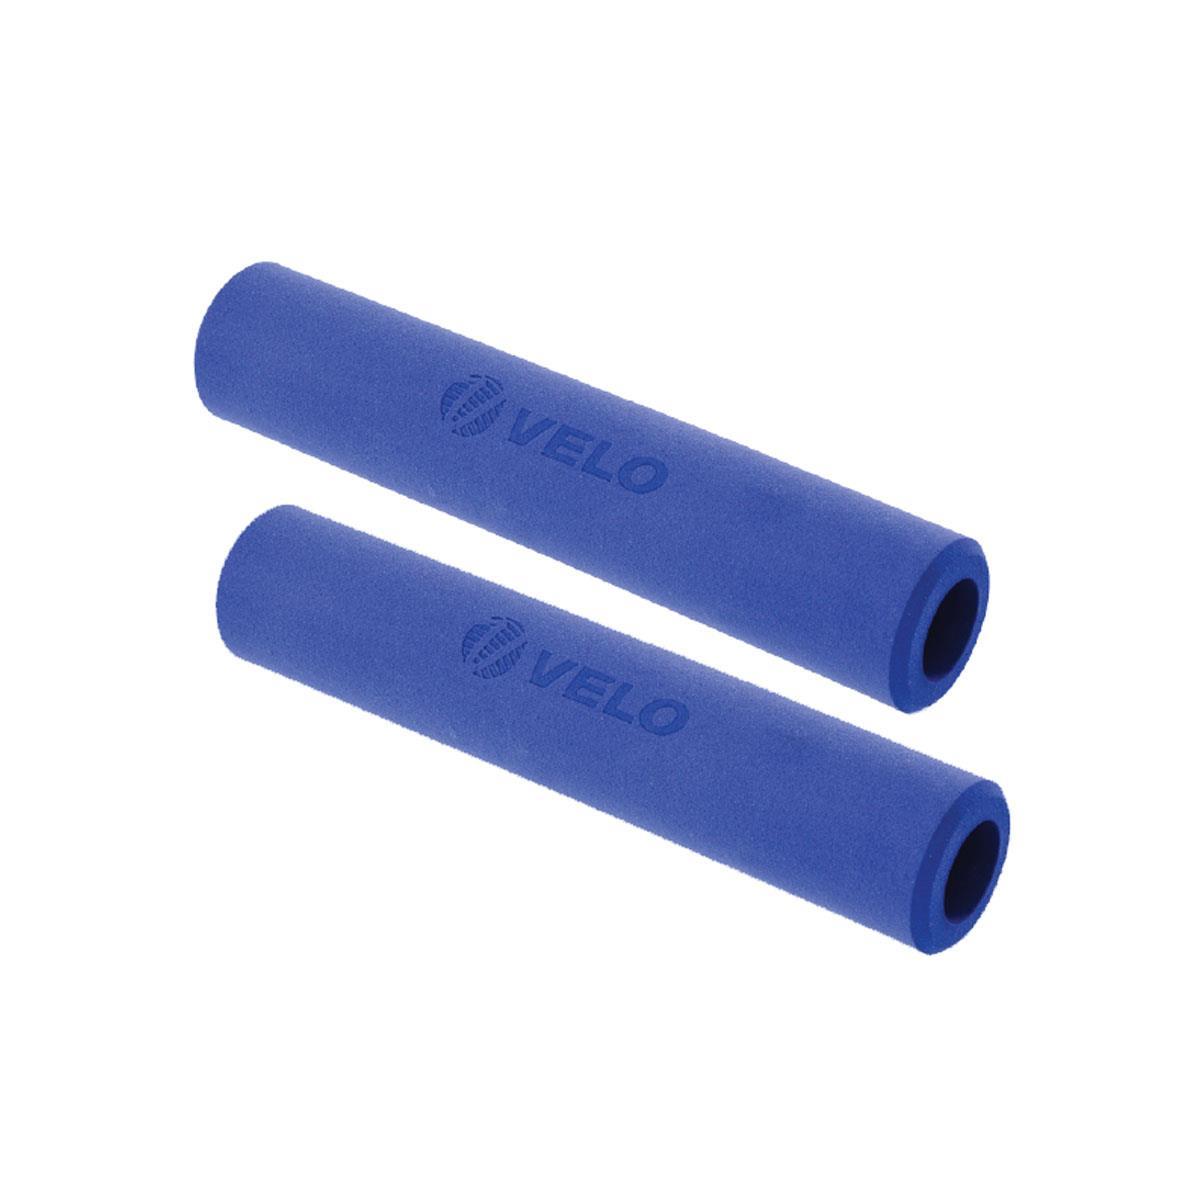 coppia manopole mtb piuma silicone extra light 130mm blu